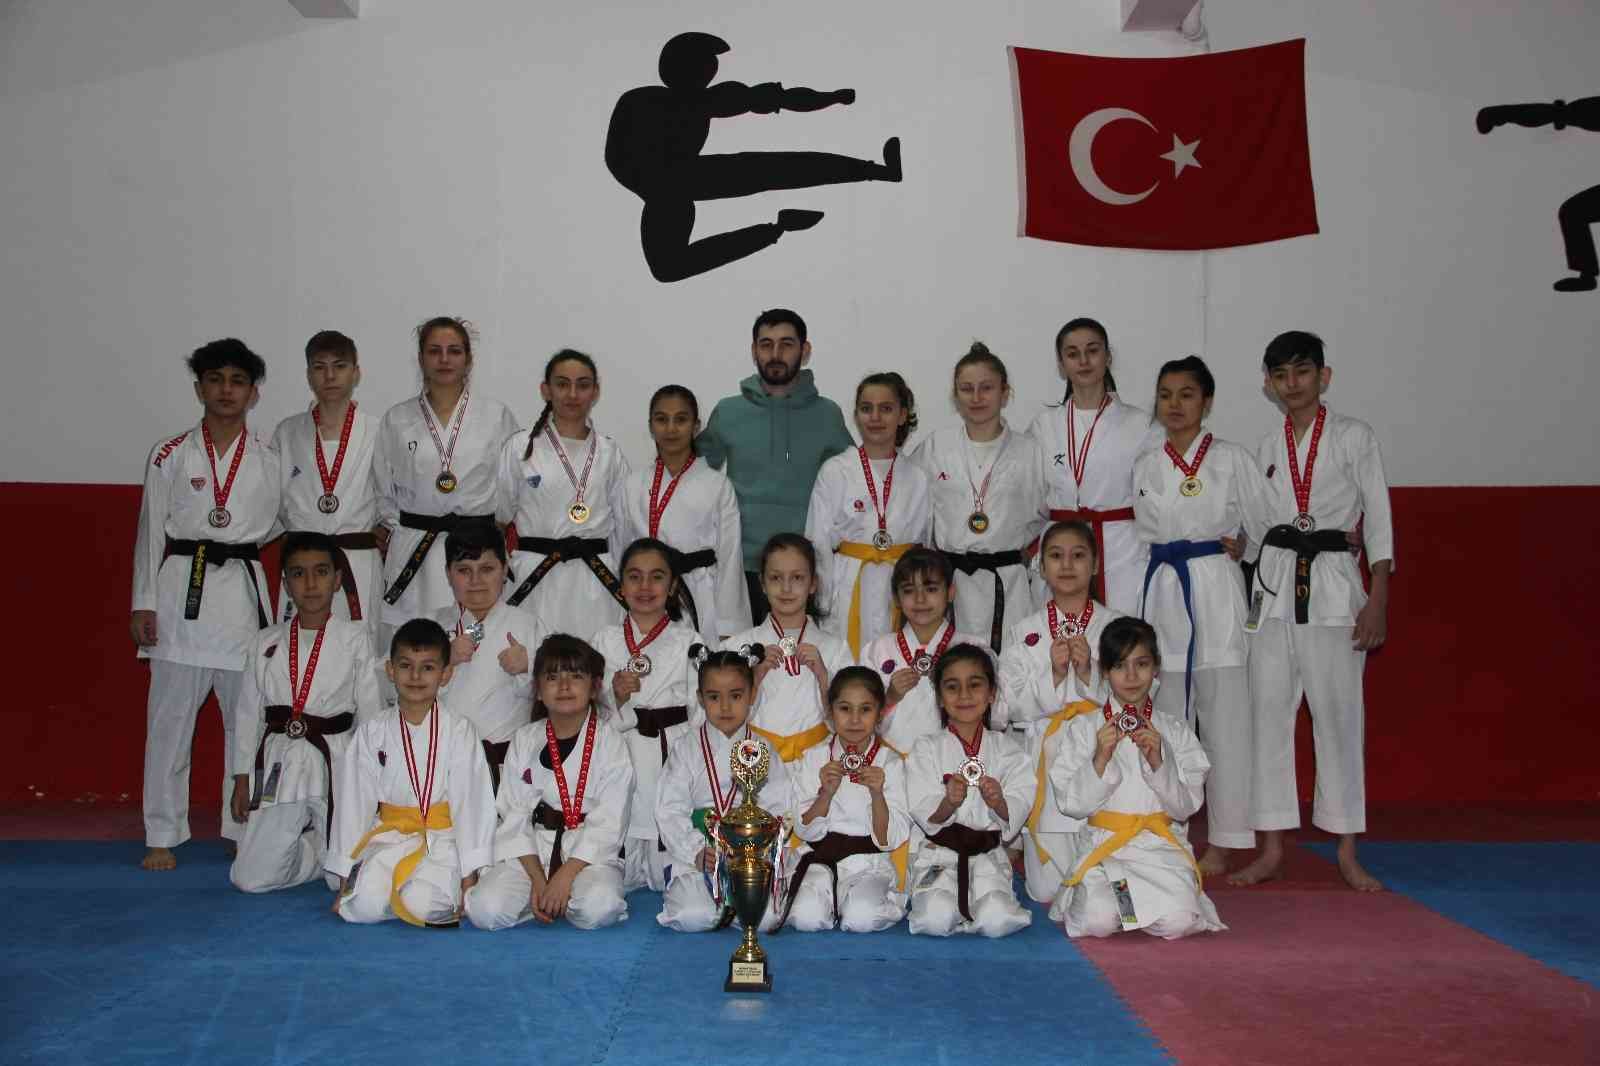 Manisalı karatecilerin hedefi önce Türkiye ardından Avrupa şampiyonluğu #manisa